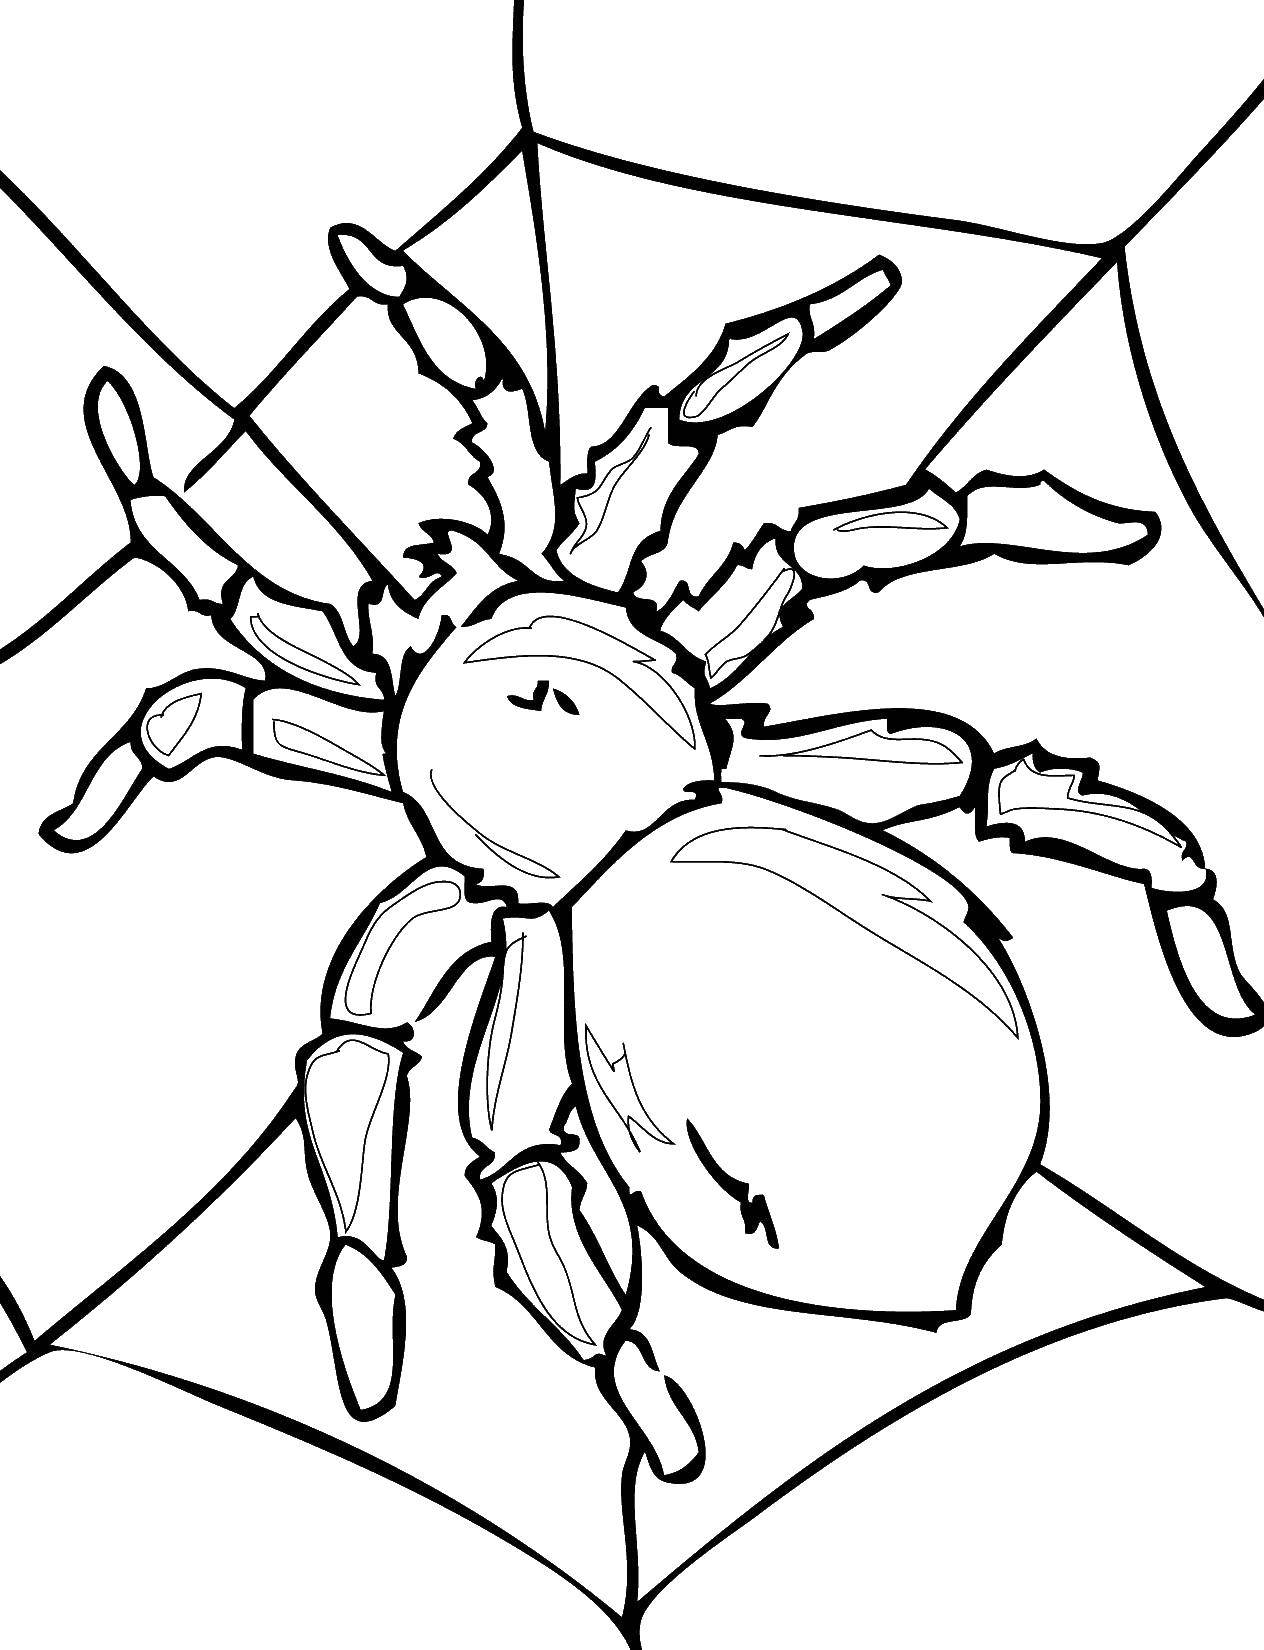   Большой паук на паутине